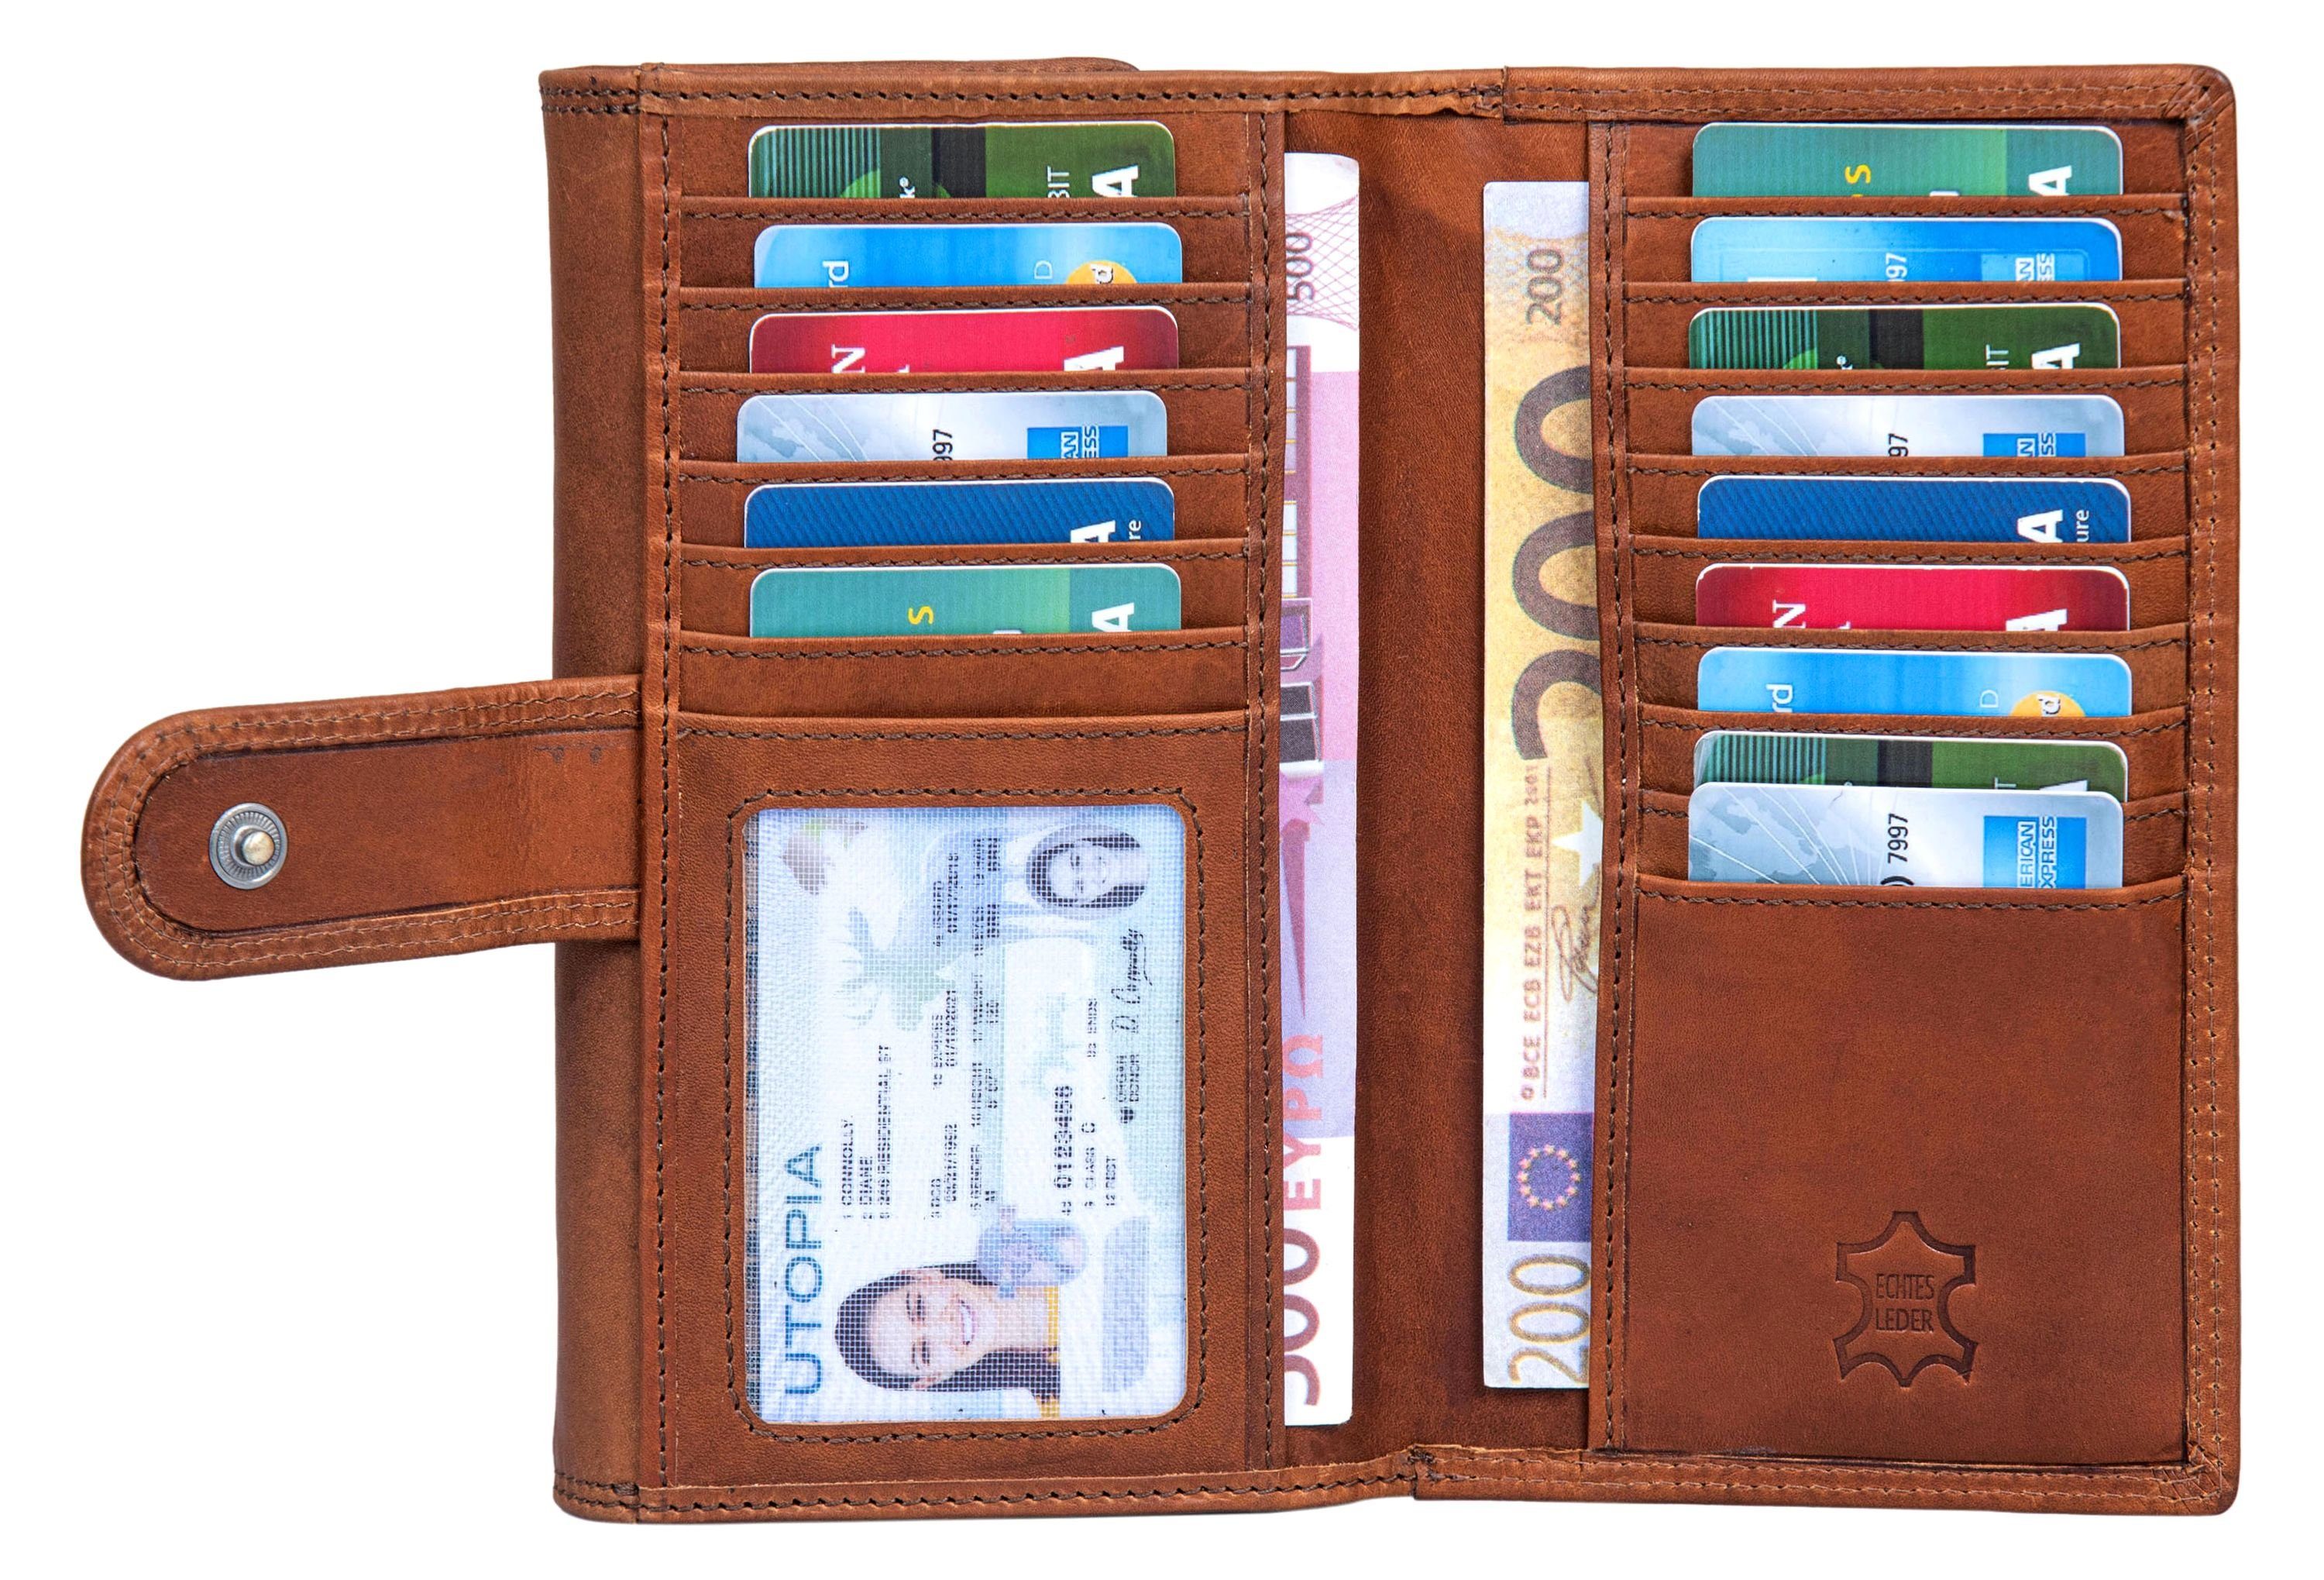 Benthill Geldbörse Damen Echt Leder Kartenfächer Fächern vielen RFID-Schutz Lang, RFID Braun mit Reißverschlussfach Portemonnaie Groß Münzfach